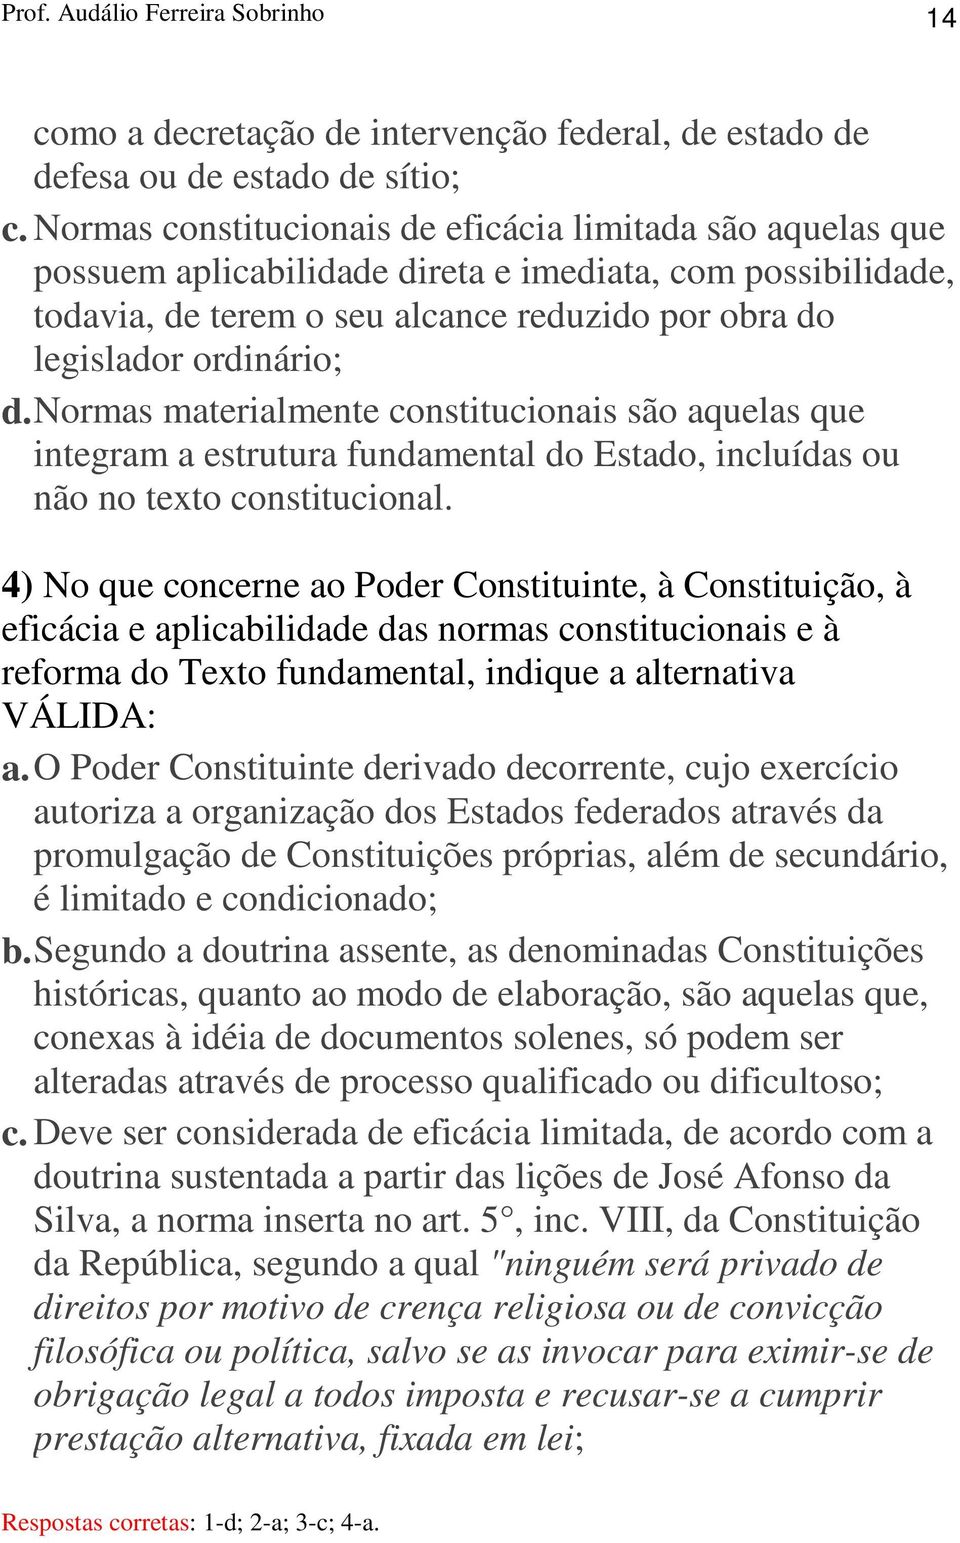 Normas materialmente constitucionais são aquelas que integram a estrutura fundamental do Estado, incluídas ou não no texto constitucional.